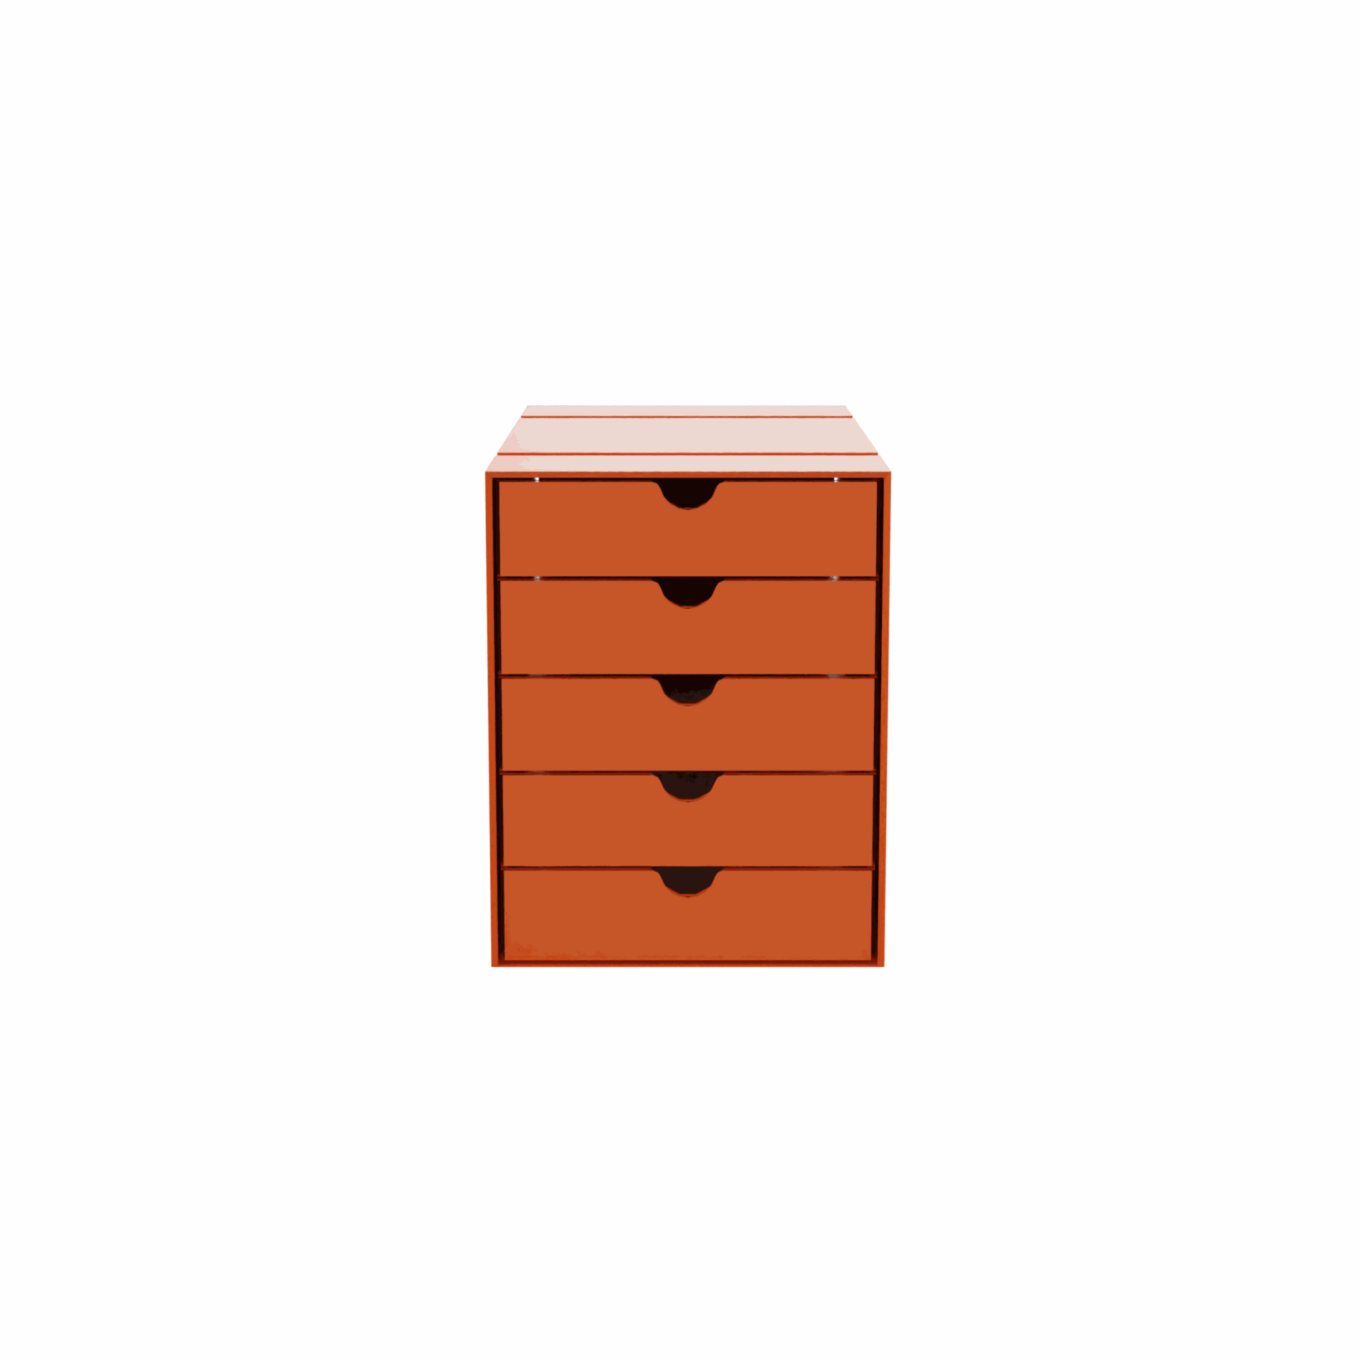 USM boîte Inos – 5 tiroirs - Image #3